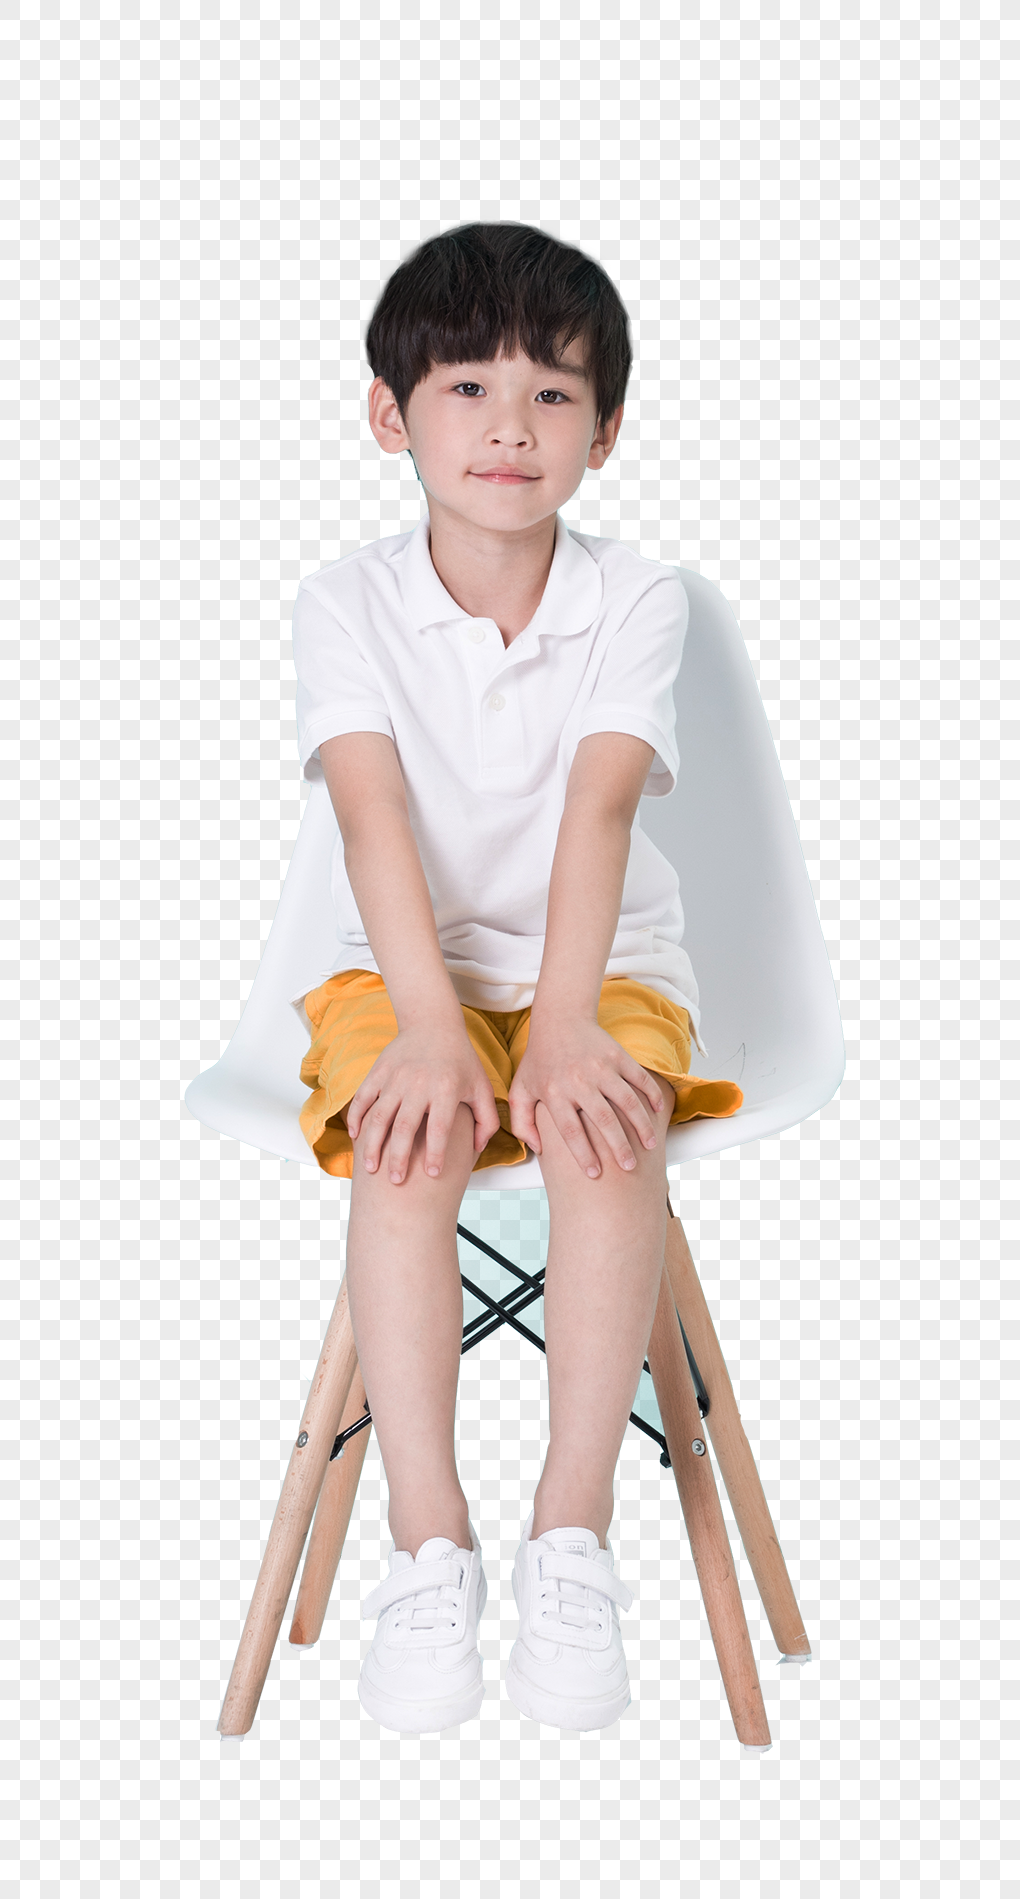 ребенок не сидит на стульчике для наказаний